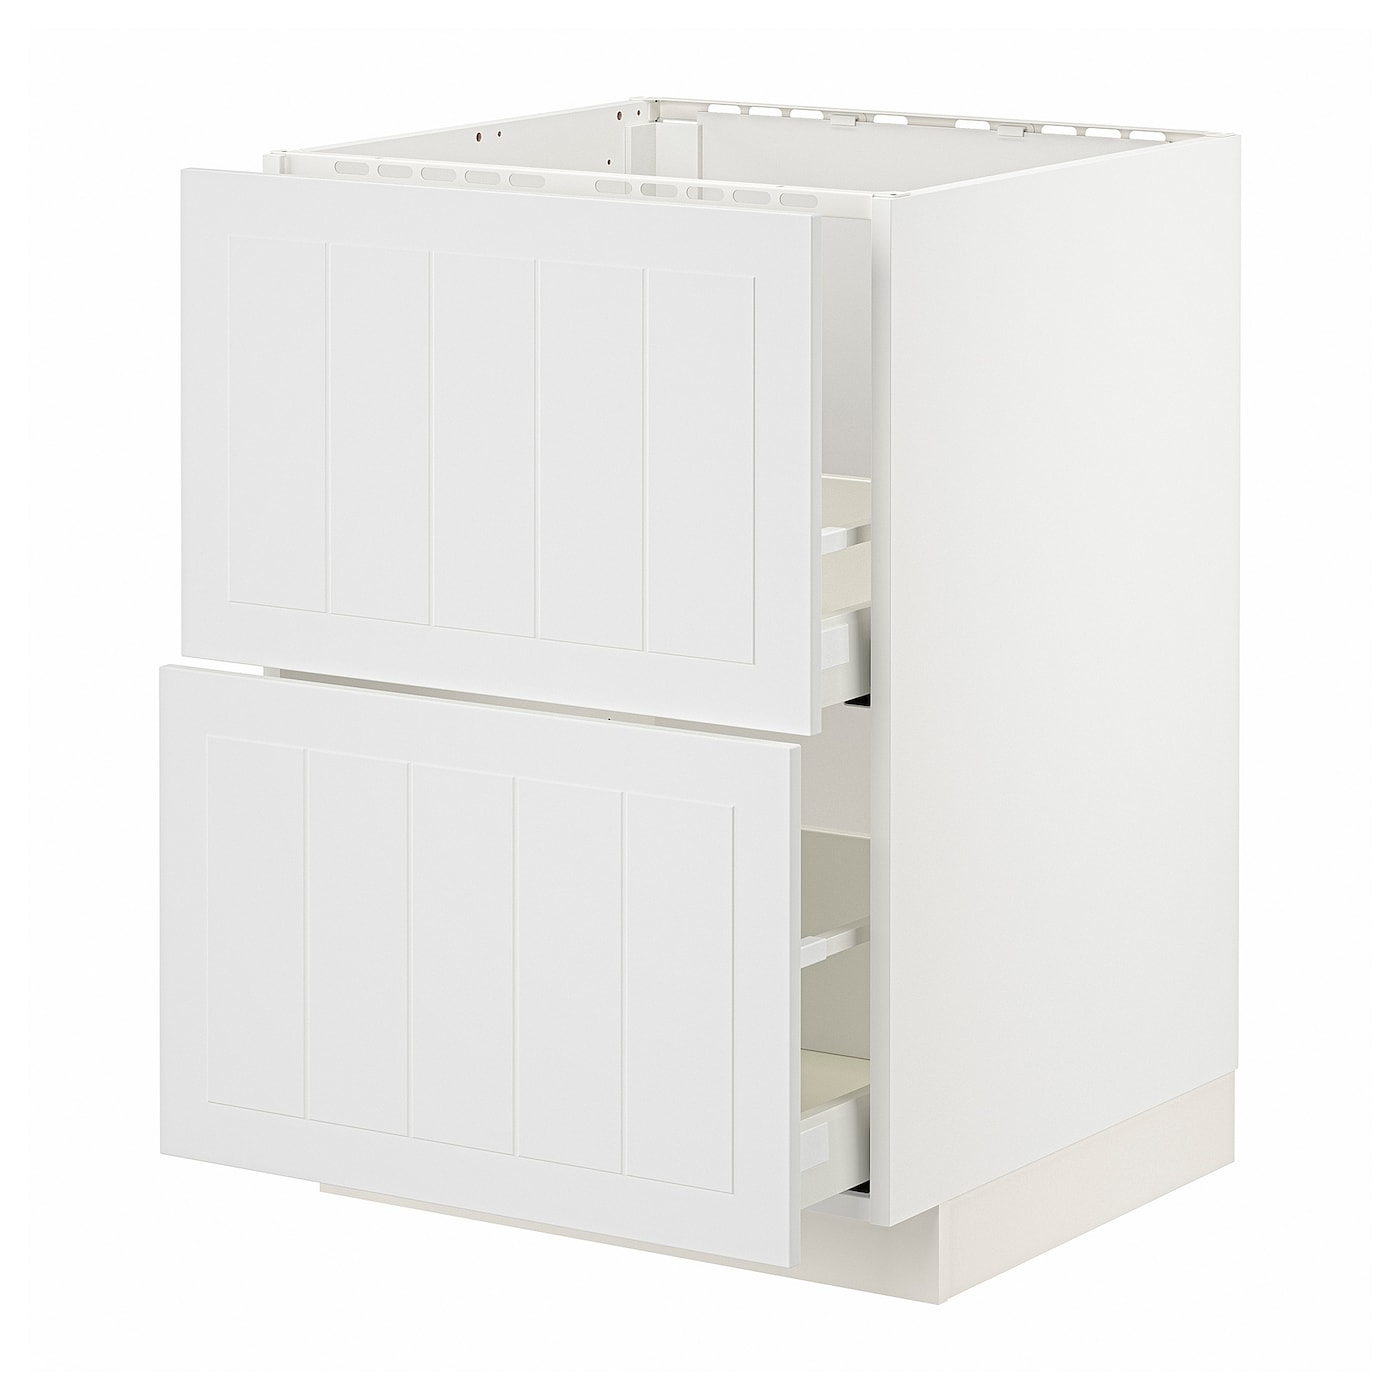 Напольный шкаф - METOD / MAXIMERA IKEA/ МЕТОД/ МАКСИМЕРА ИКЕА,  60х60 см, белый